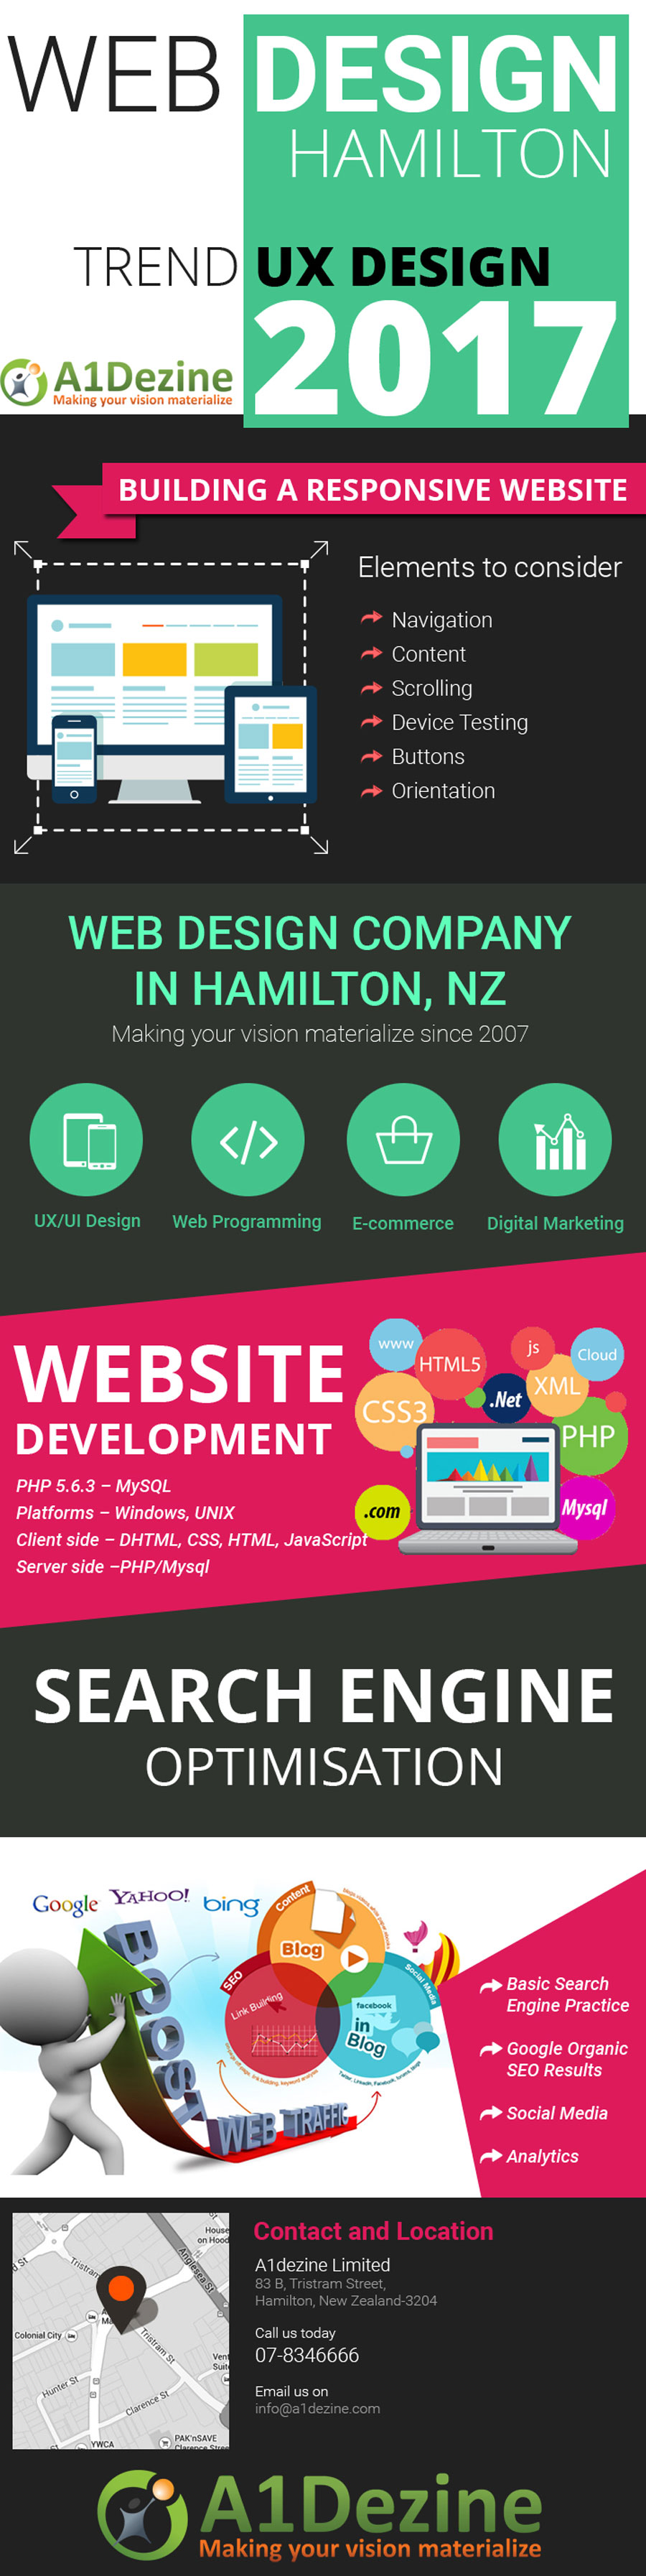 Website-development-NZ